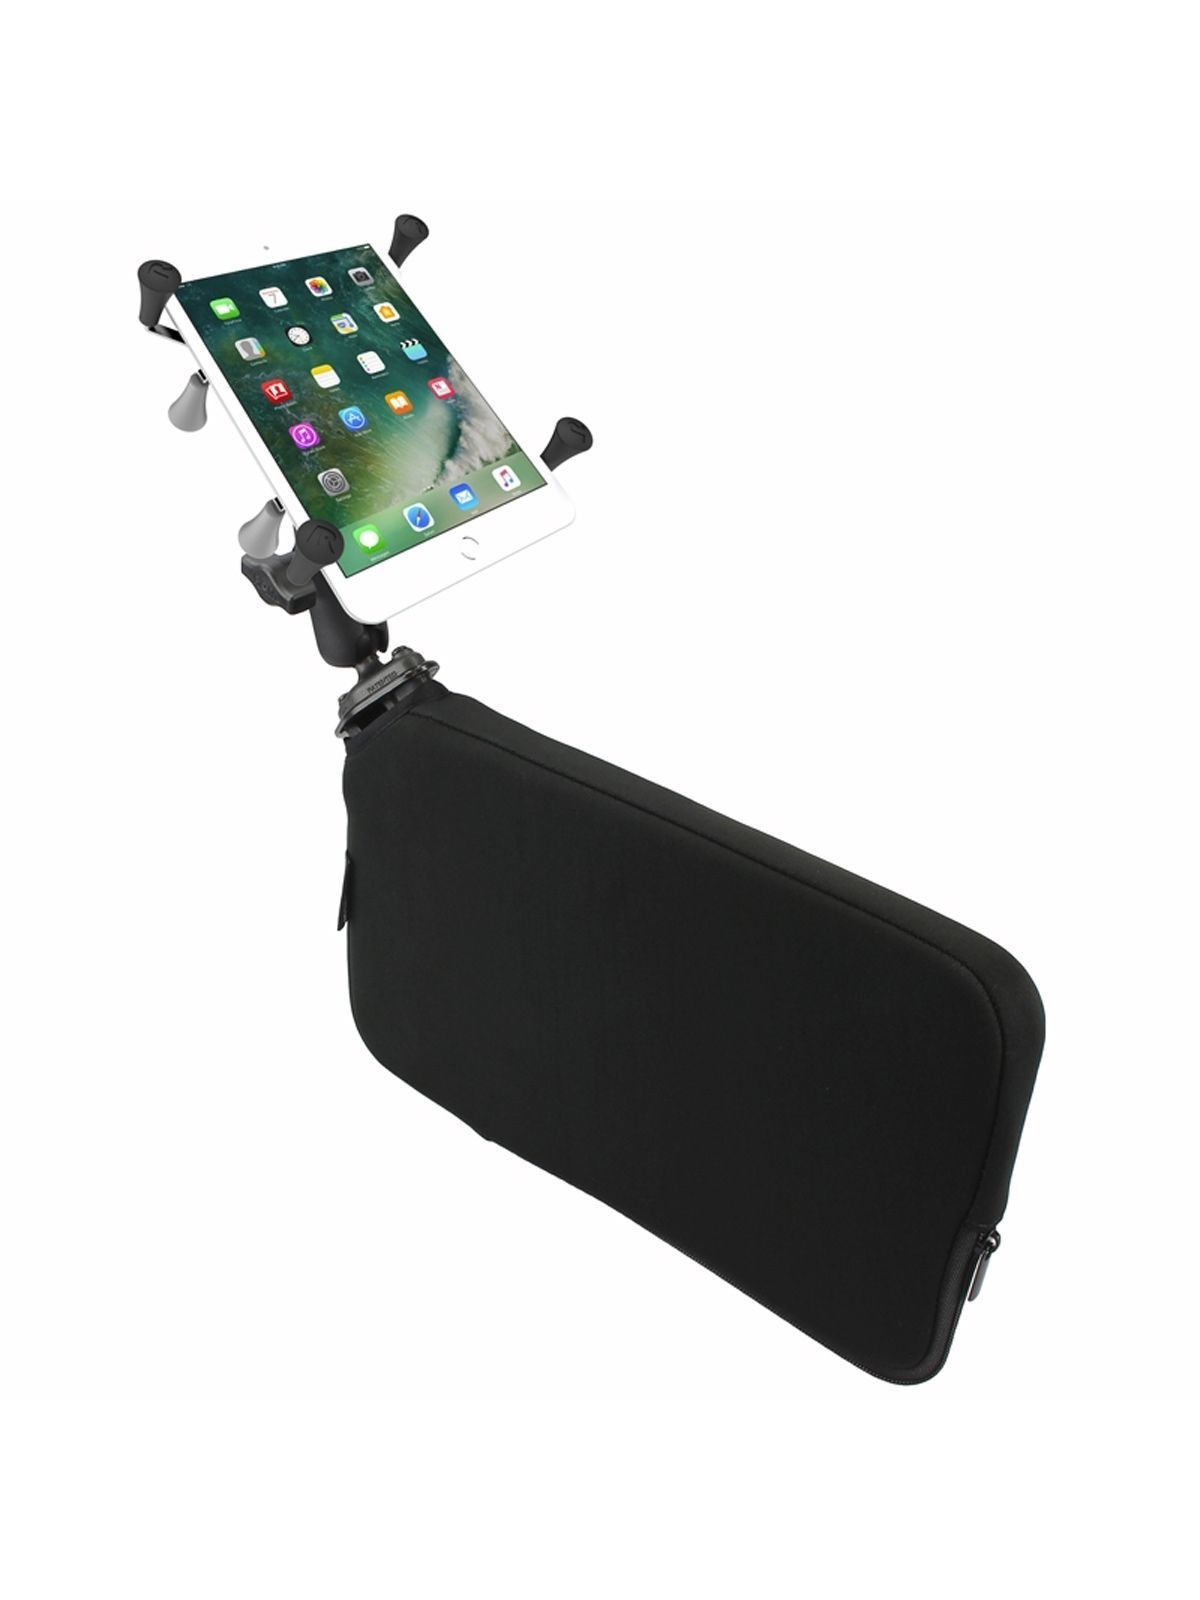 RAM Mounts Fahrzeug-Halterung mit X-Grip Halteklammer für Tablets (7 Zoll) - B-Kugel (1 Zoll), Tough-Wedge (aufblasbar), mittlerer Verbindungsarm